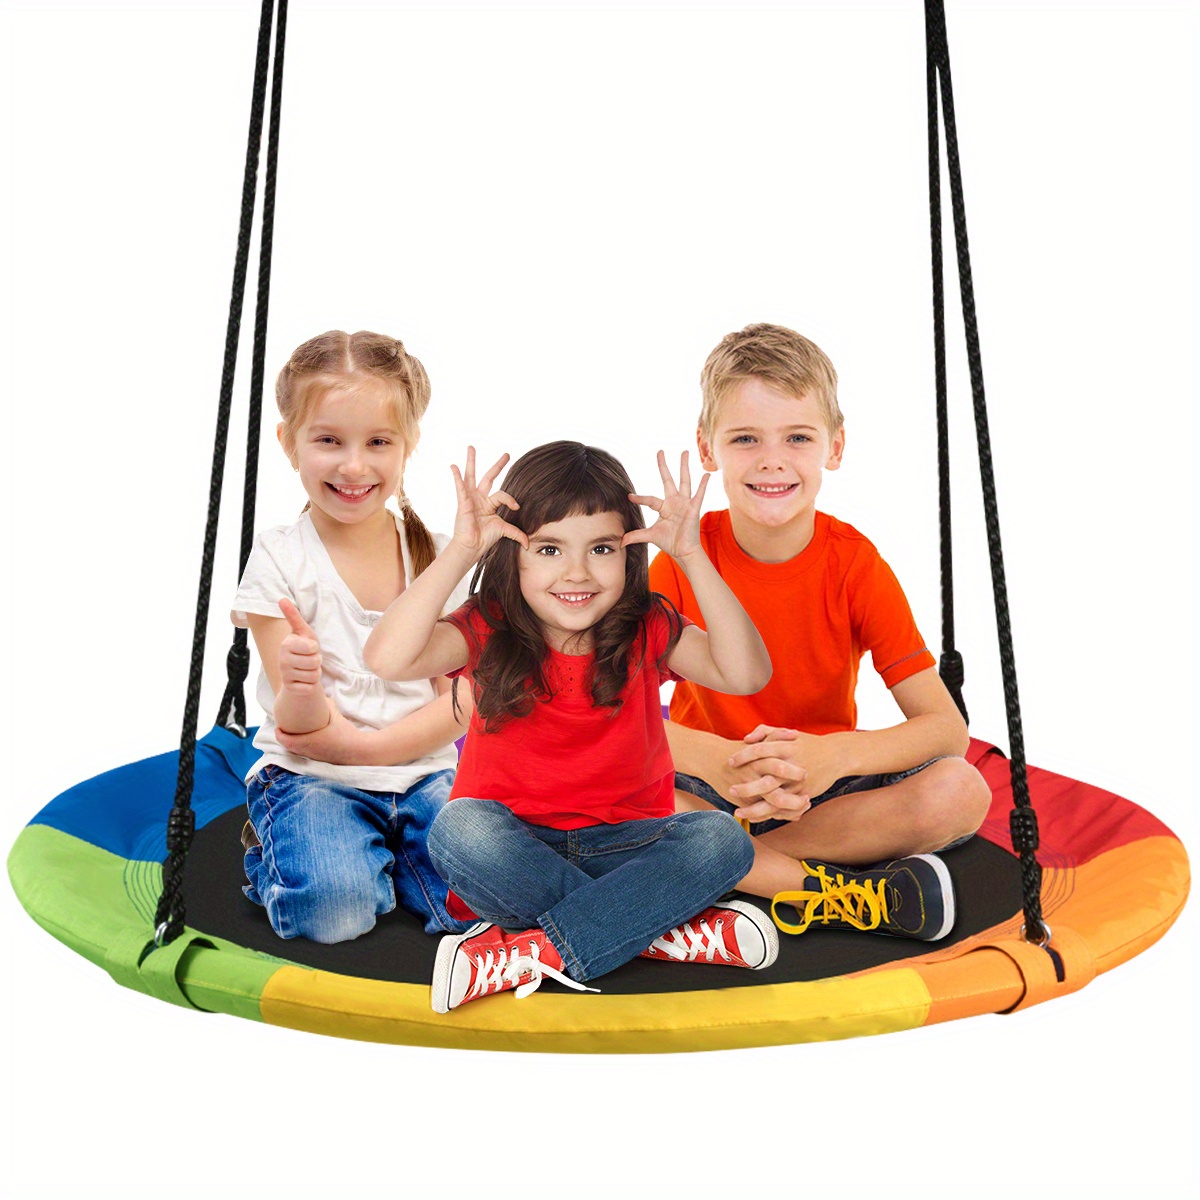 

Multigot Giant 40" Flying Saucer Tree Swing Indoor Outdoor Play Set Swing For Kids